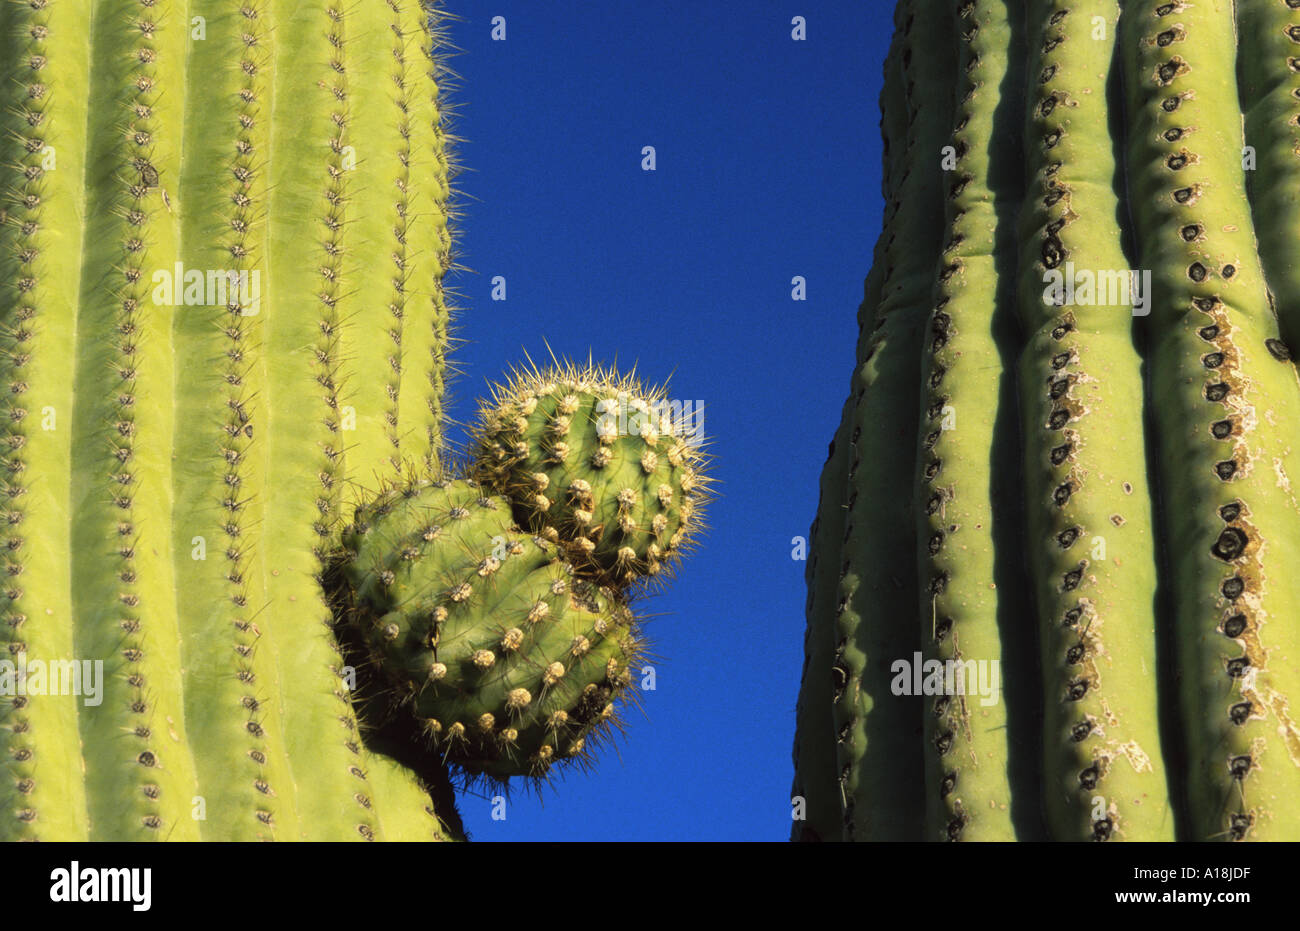 saguaro cactus (Carnegiea gigantea, Cereus giganteus), detail, USA, Arizona, Saguaro NP, Apr.04. Stock Photo